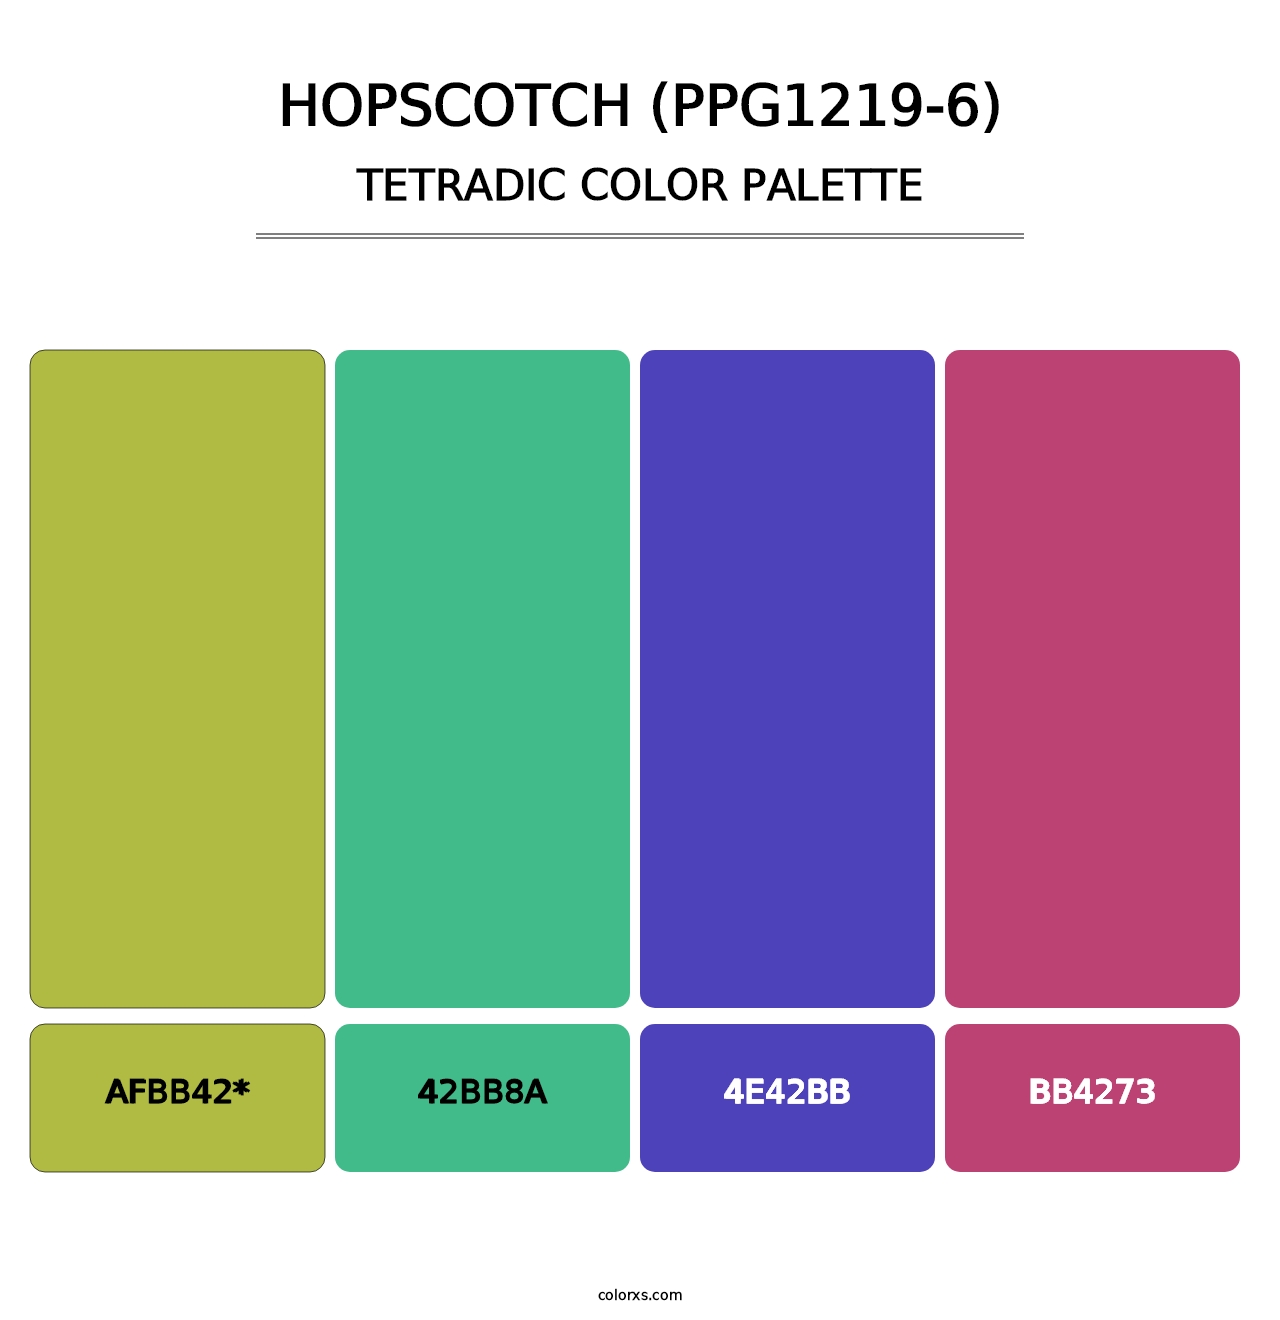 Hopscotch (PPG1219-6) - Tetradic Color Palette